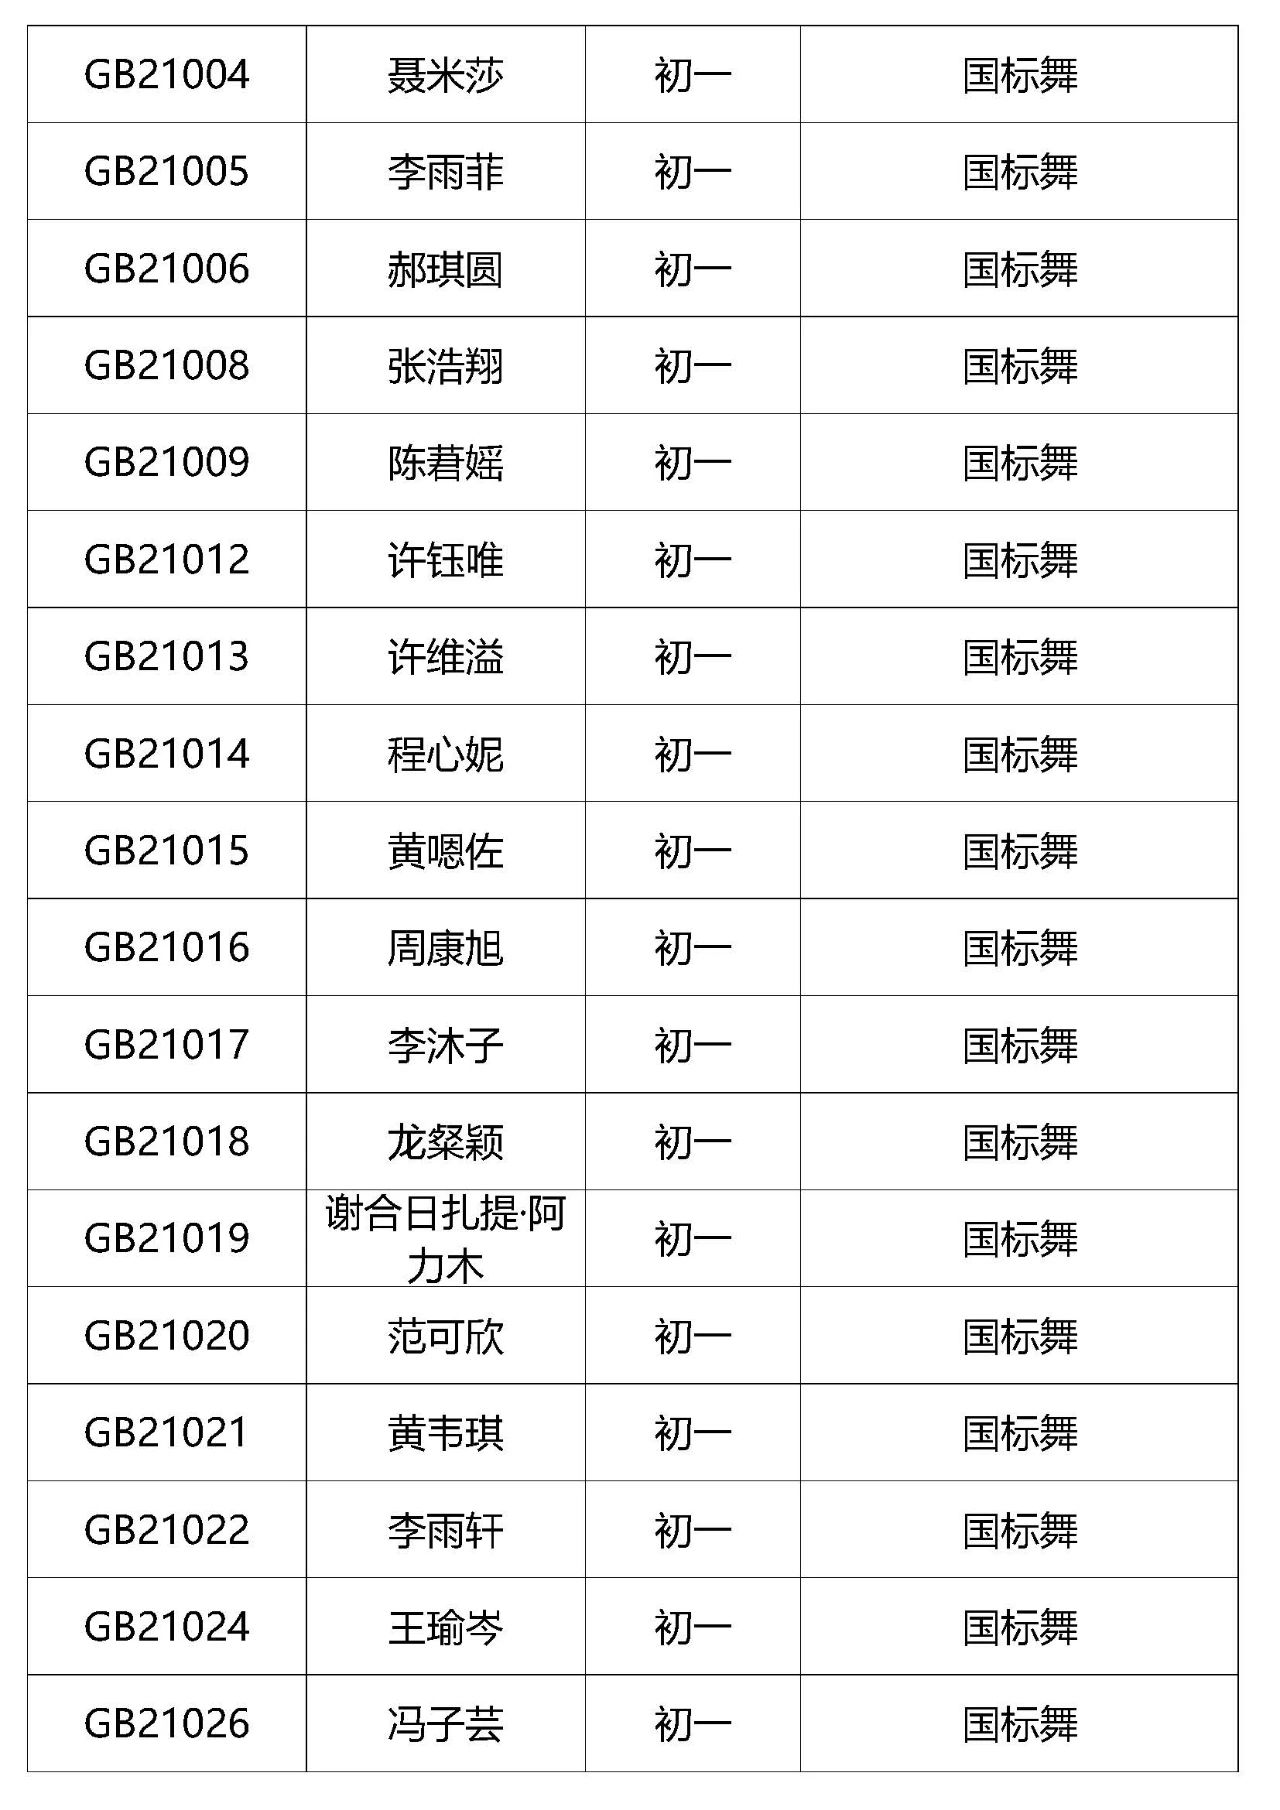 2021年深圳艺术学校招生考试复试名单